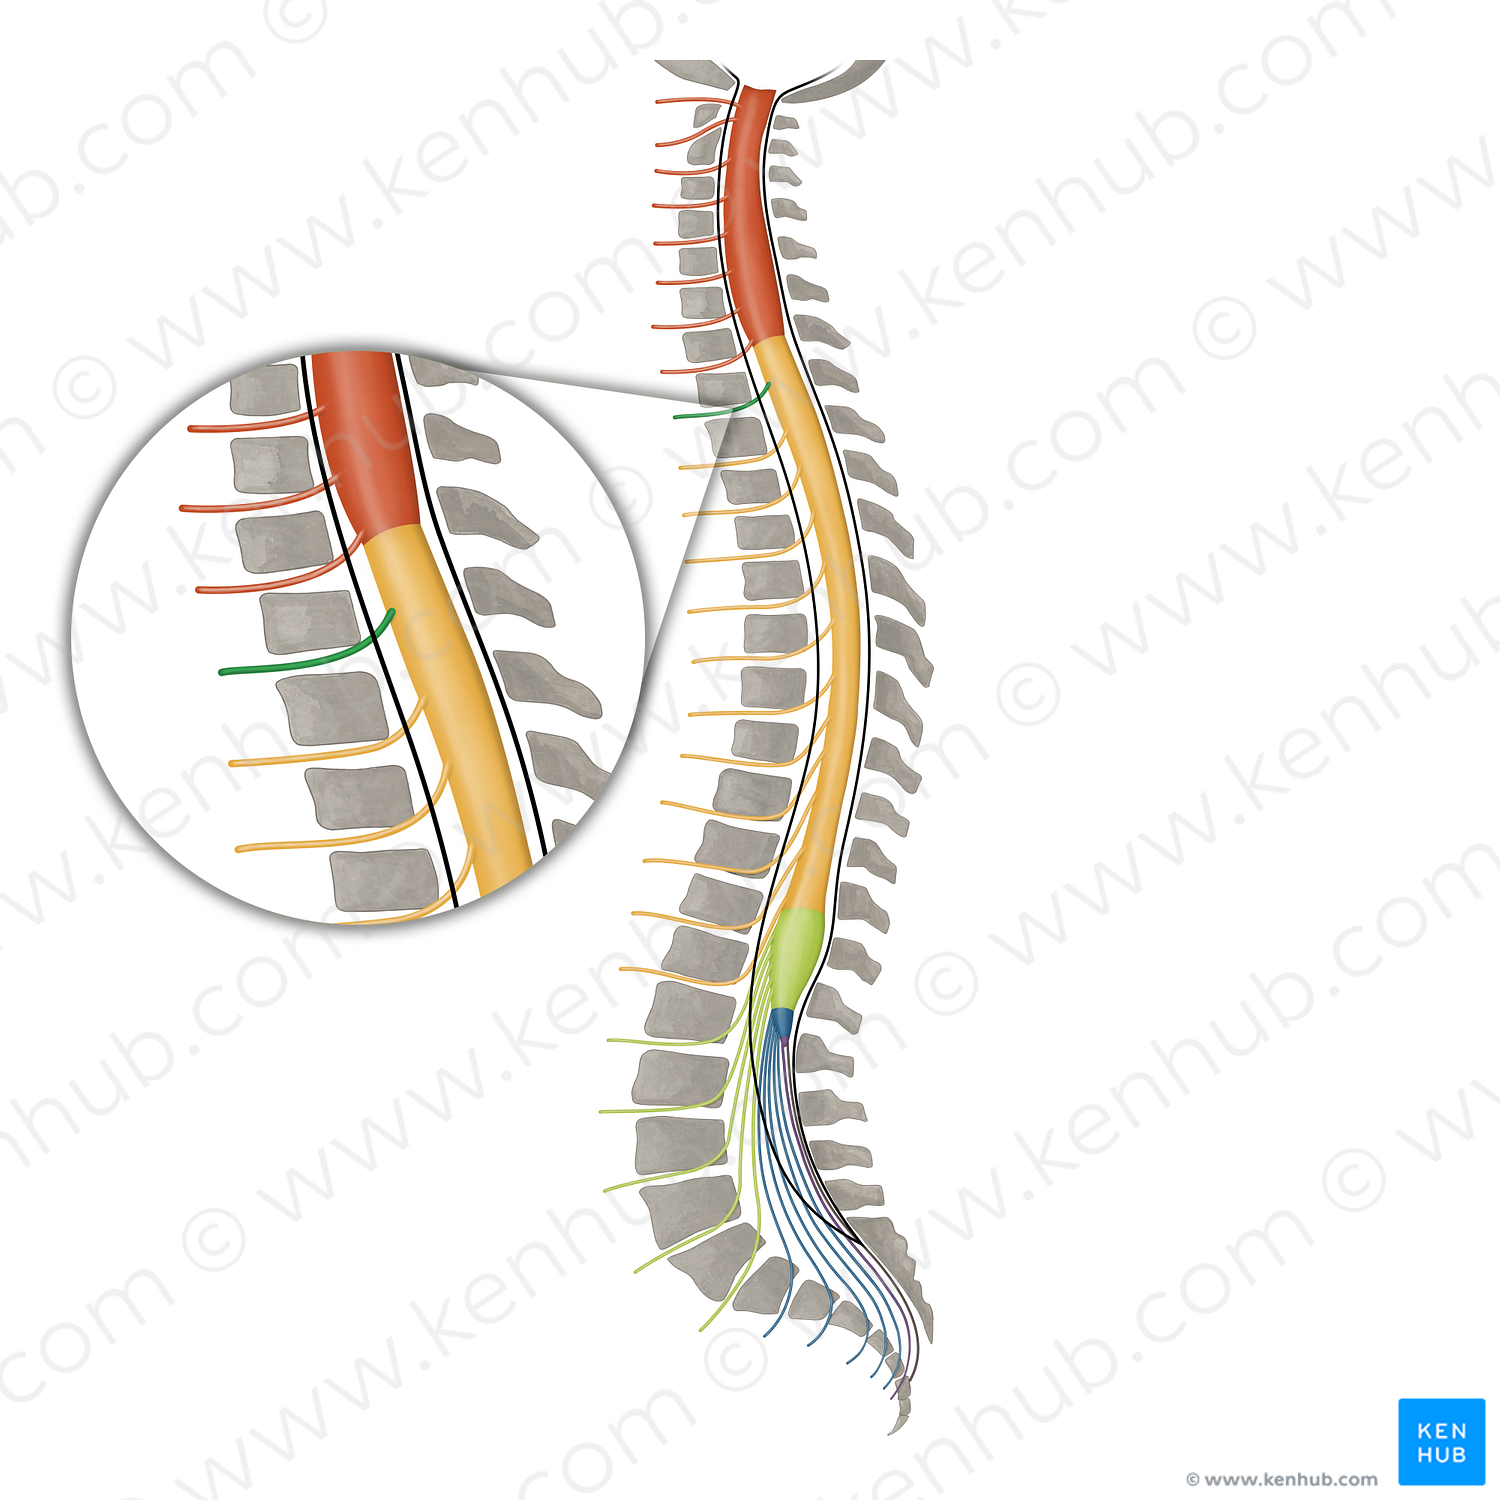 Spinal nerve T1 (#16112)